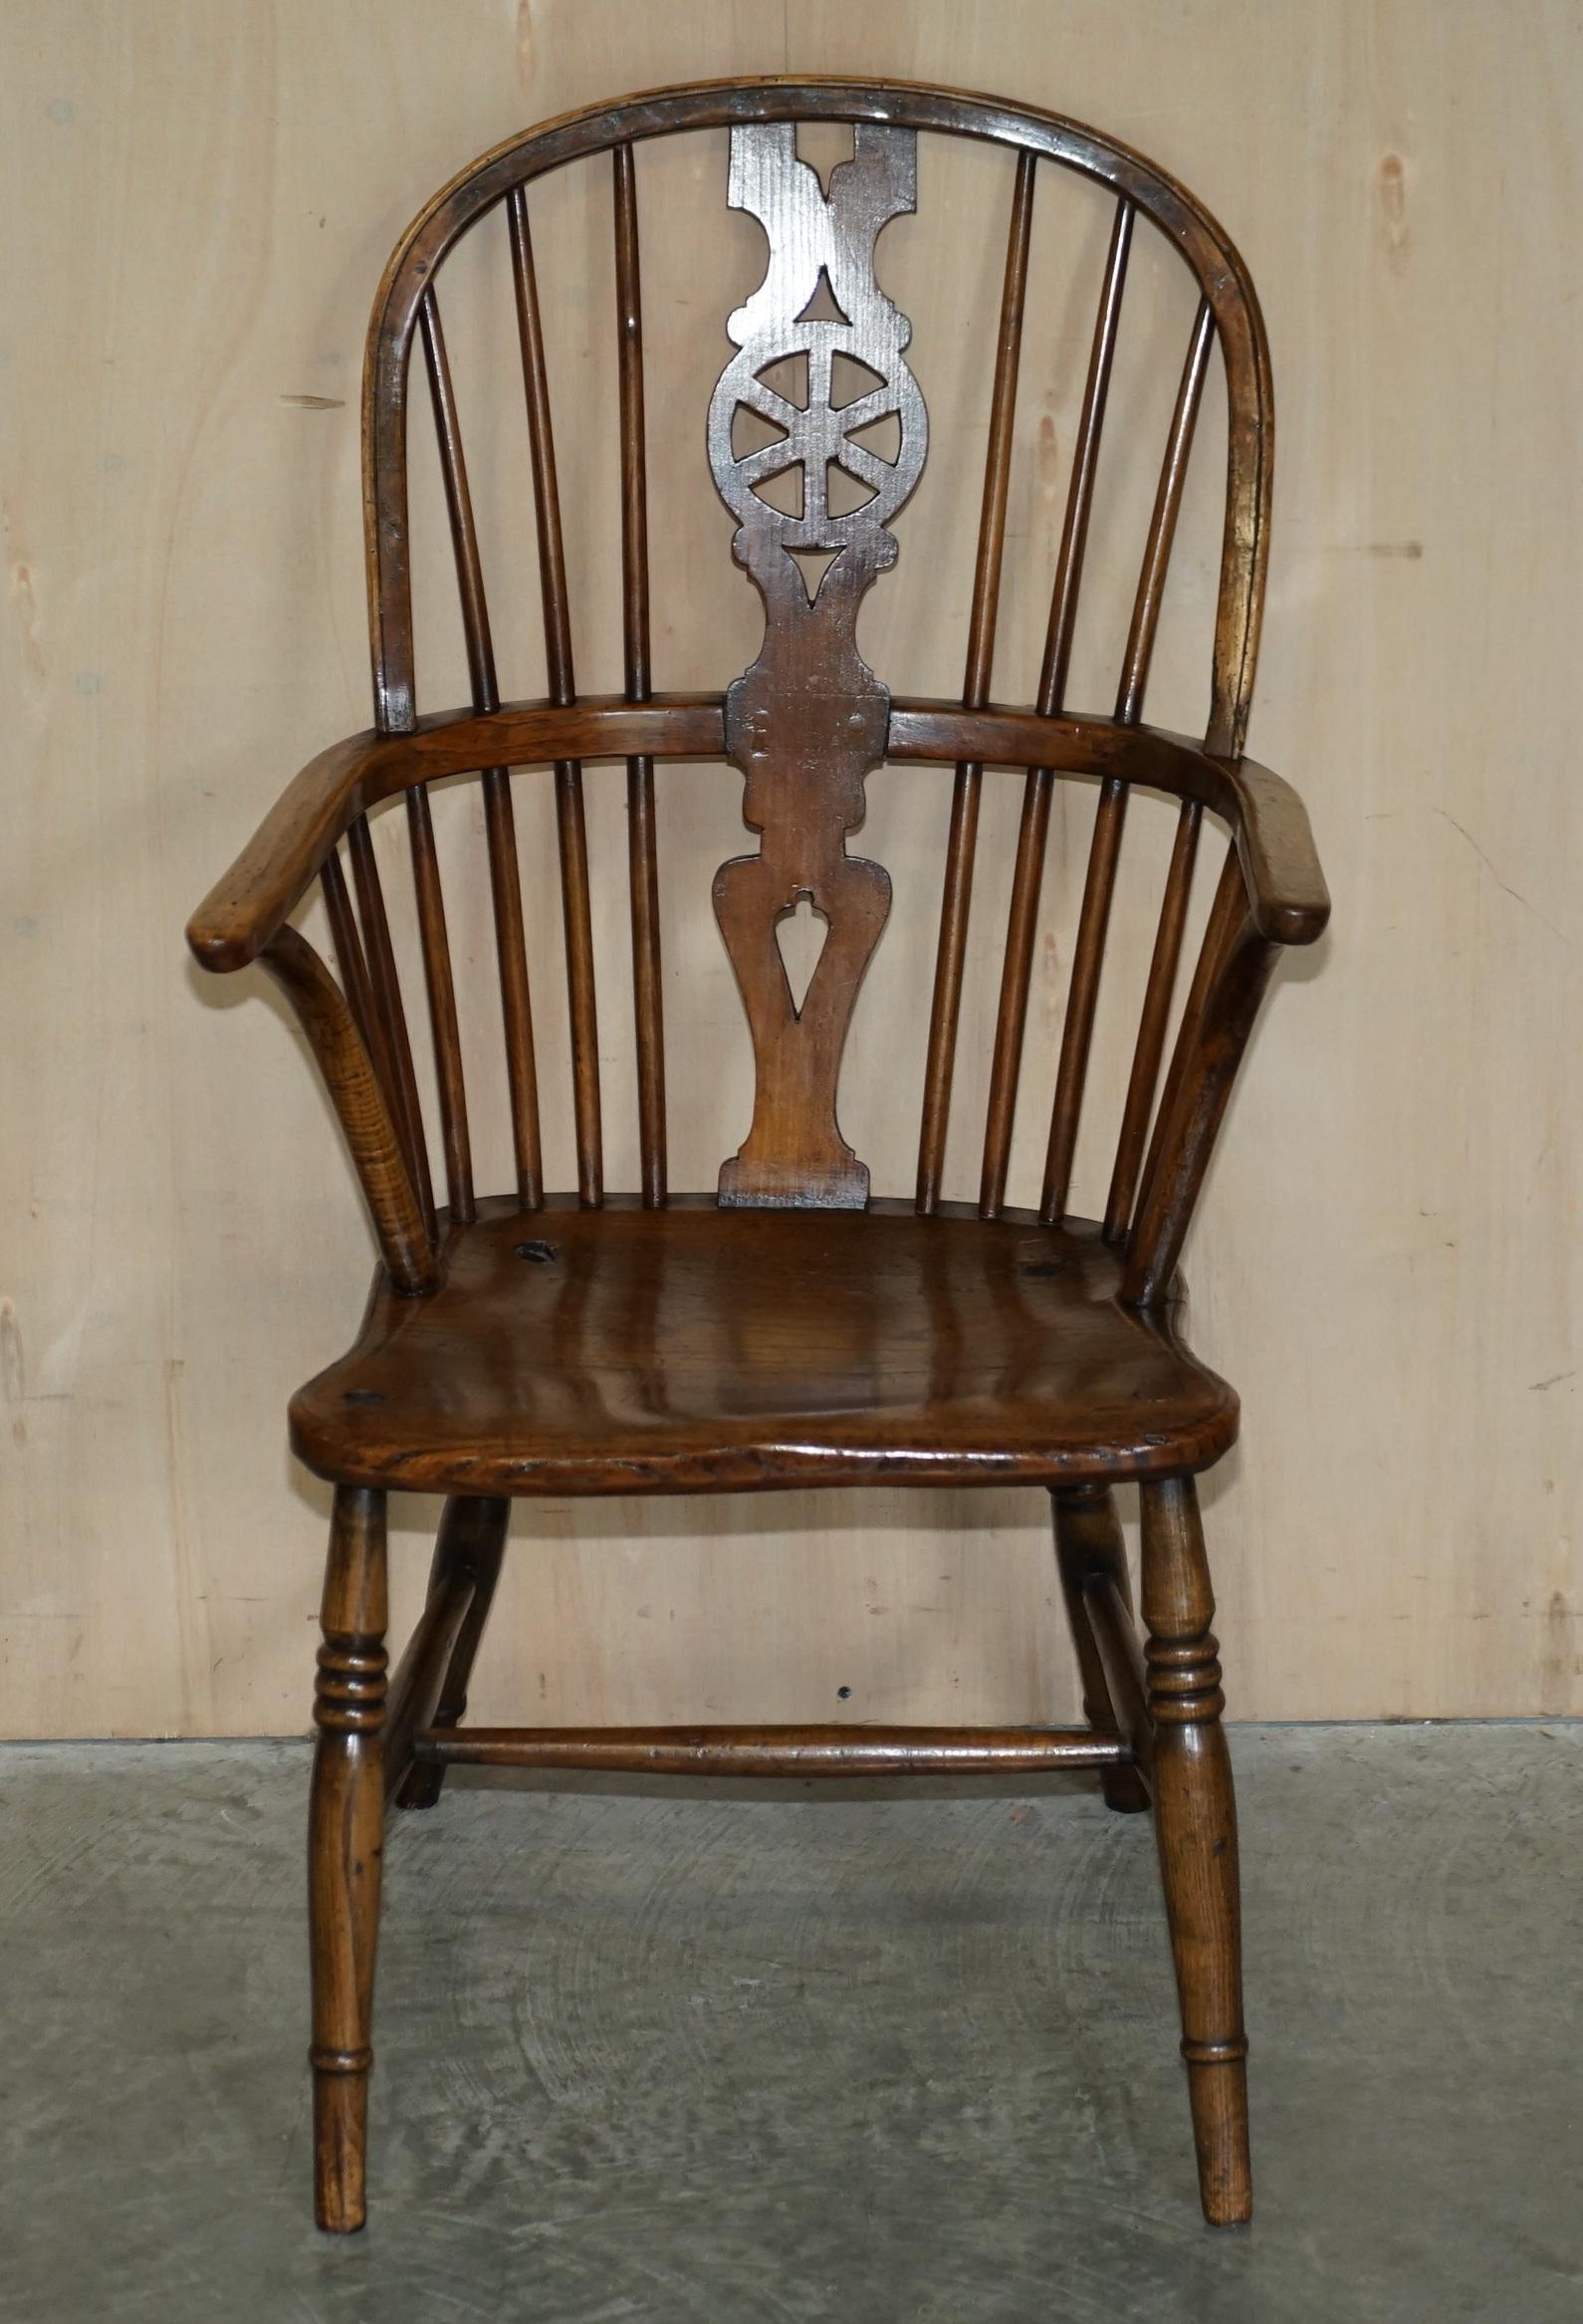 Nous sommes ravis d'offrir à la vente ce superbe fauteuil Windsor du début du 19ème siècle, de style classique anglais, avec un dossier en orme

Un fauteuil très convoité, bien fait et décoratif, dans le style traditionnel de l'orme, il s'agit